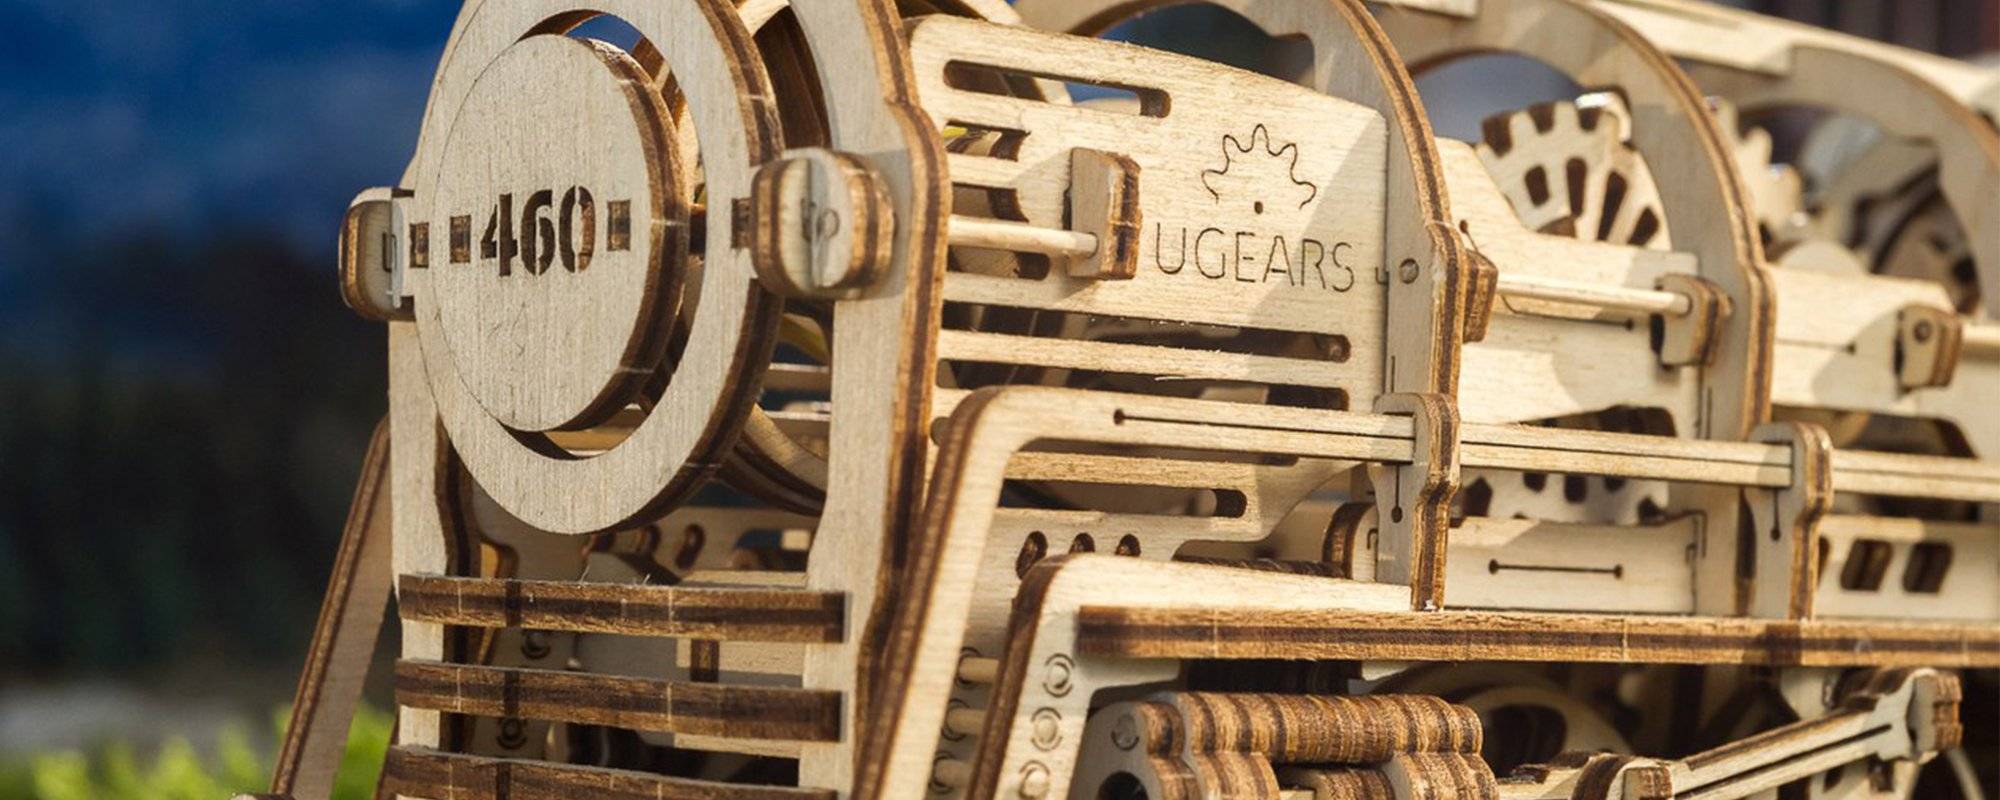 Идеальный подарок найден: деревянный конструктор ugears - 4pda